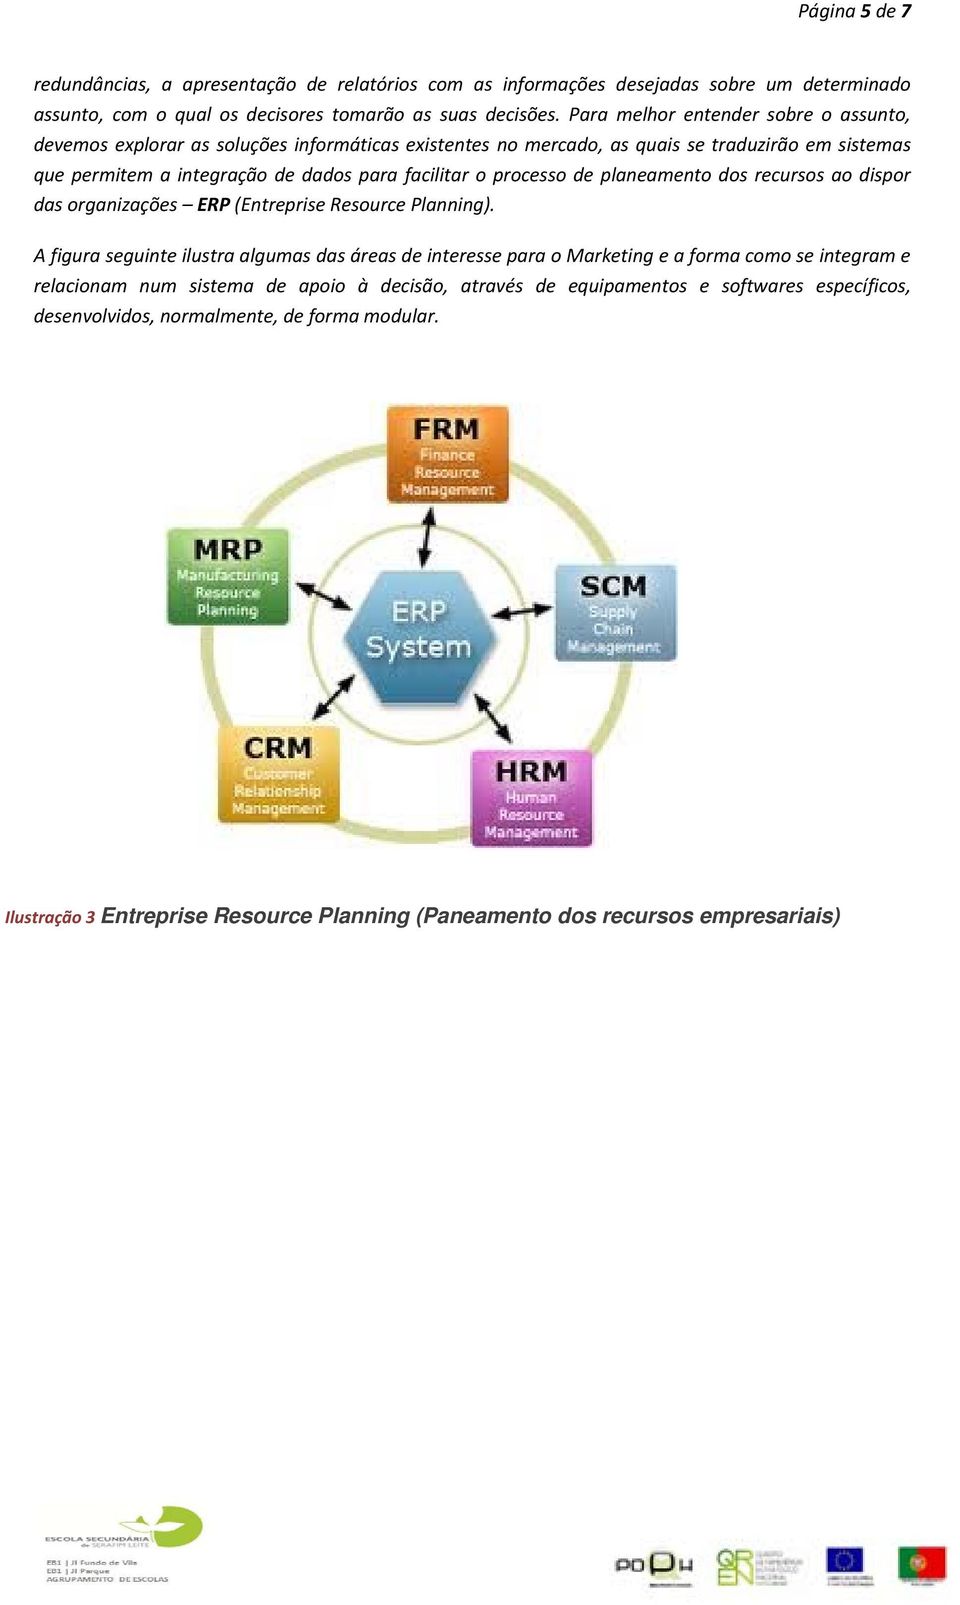 processo de planeamento dos recursos ao dispor das organizações ERP (Entreprise Resource Planning).